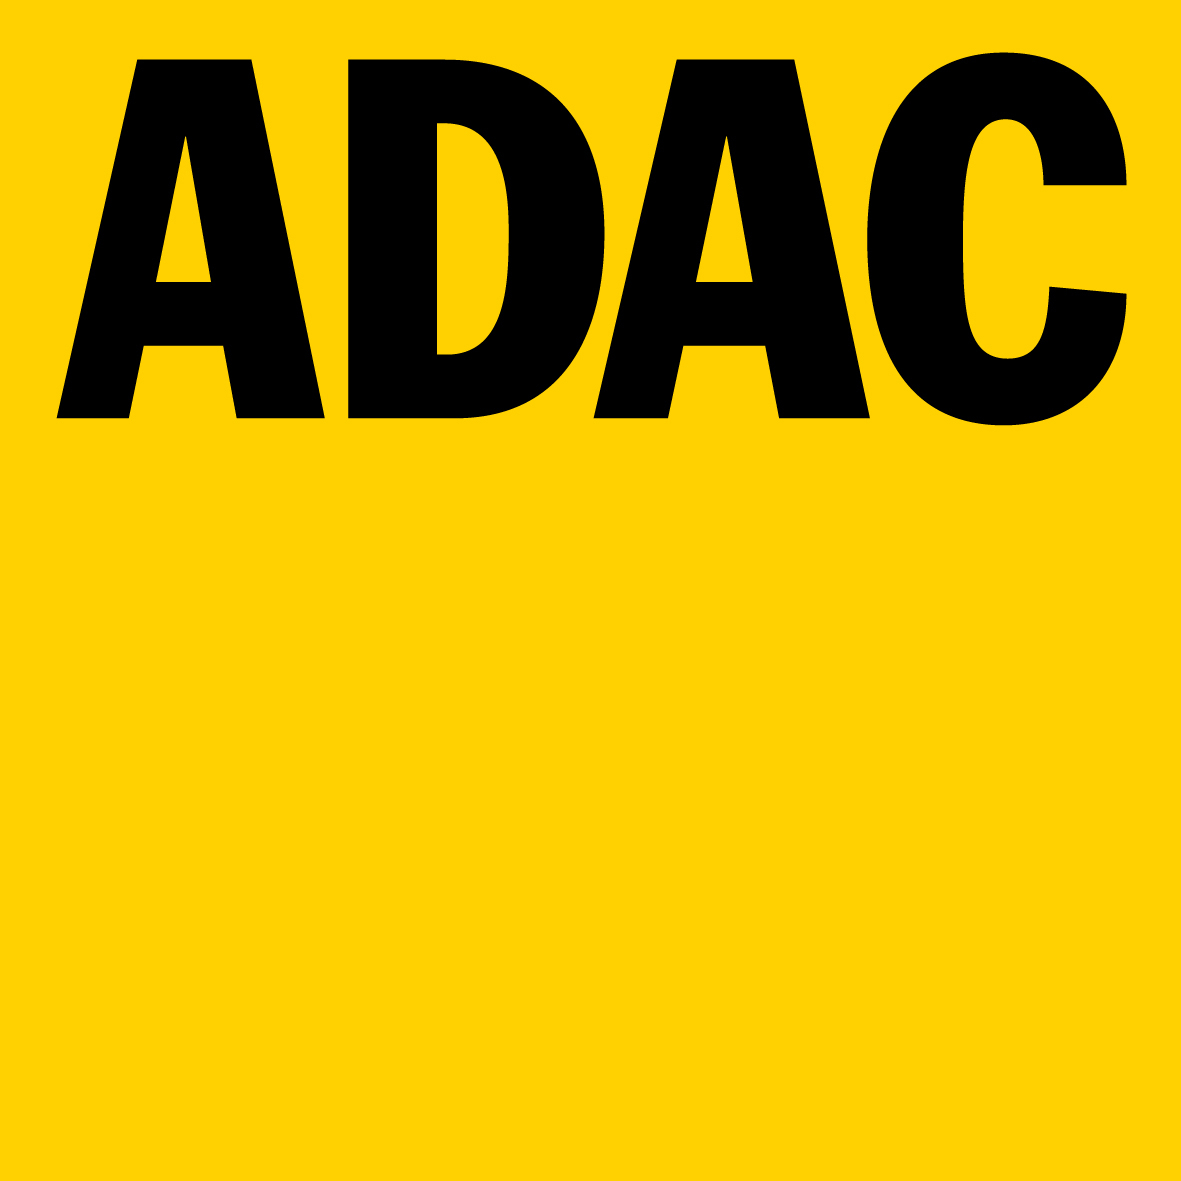 ADAC e V 75mm 4c